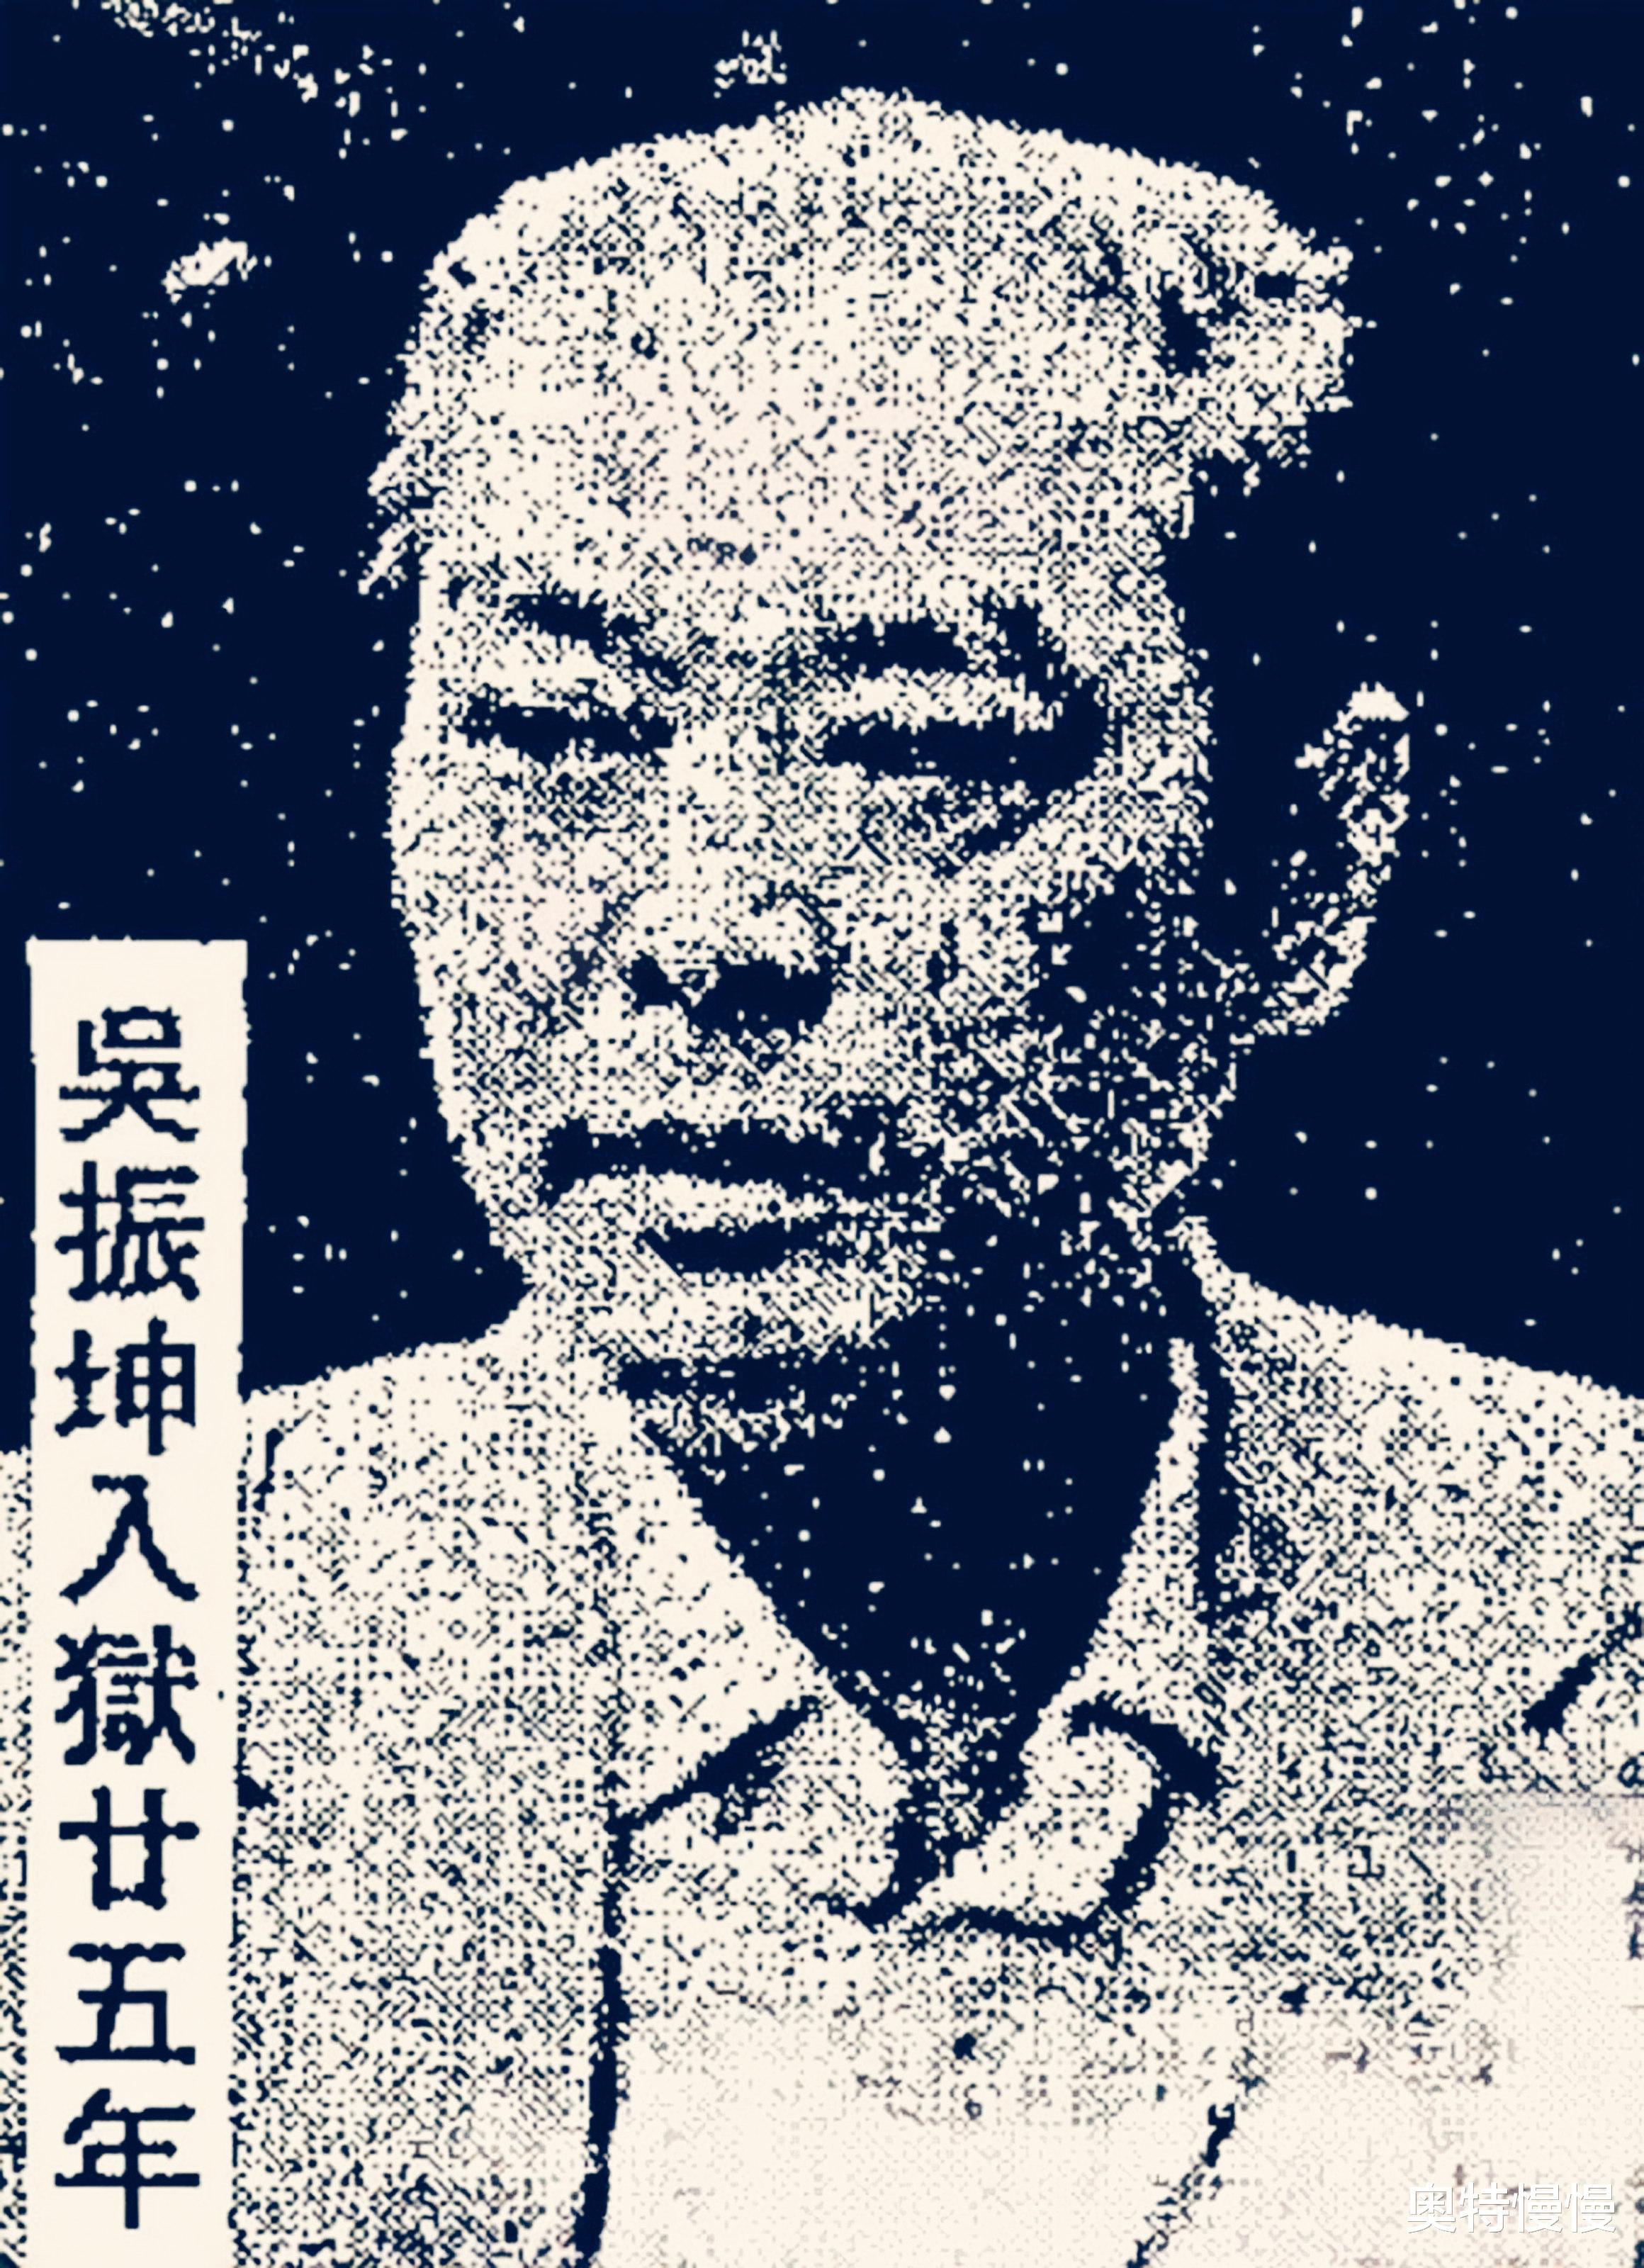 大毒枭跛豪的叔叔，提携跛豪上位雇佣陈惠敏当保镖，晚年入狱25年